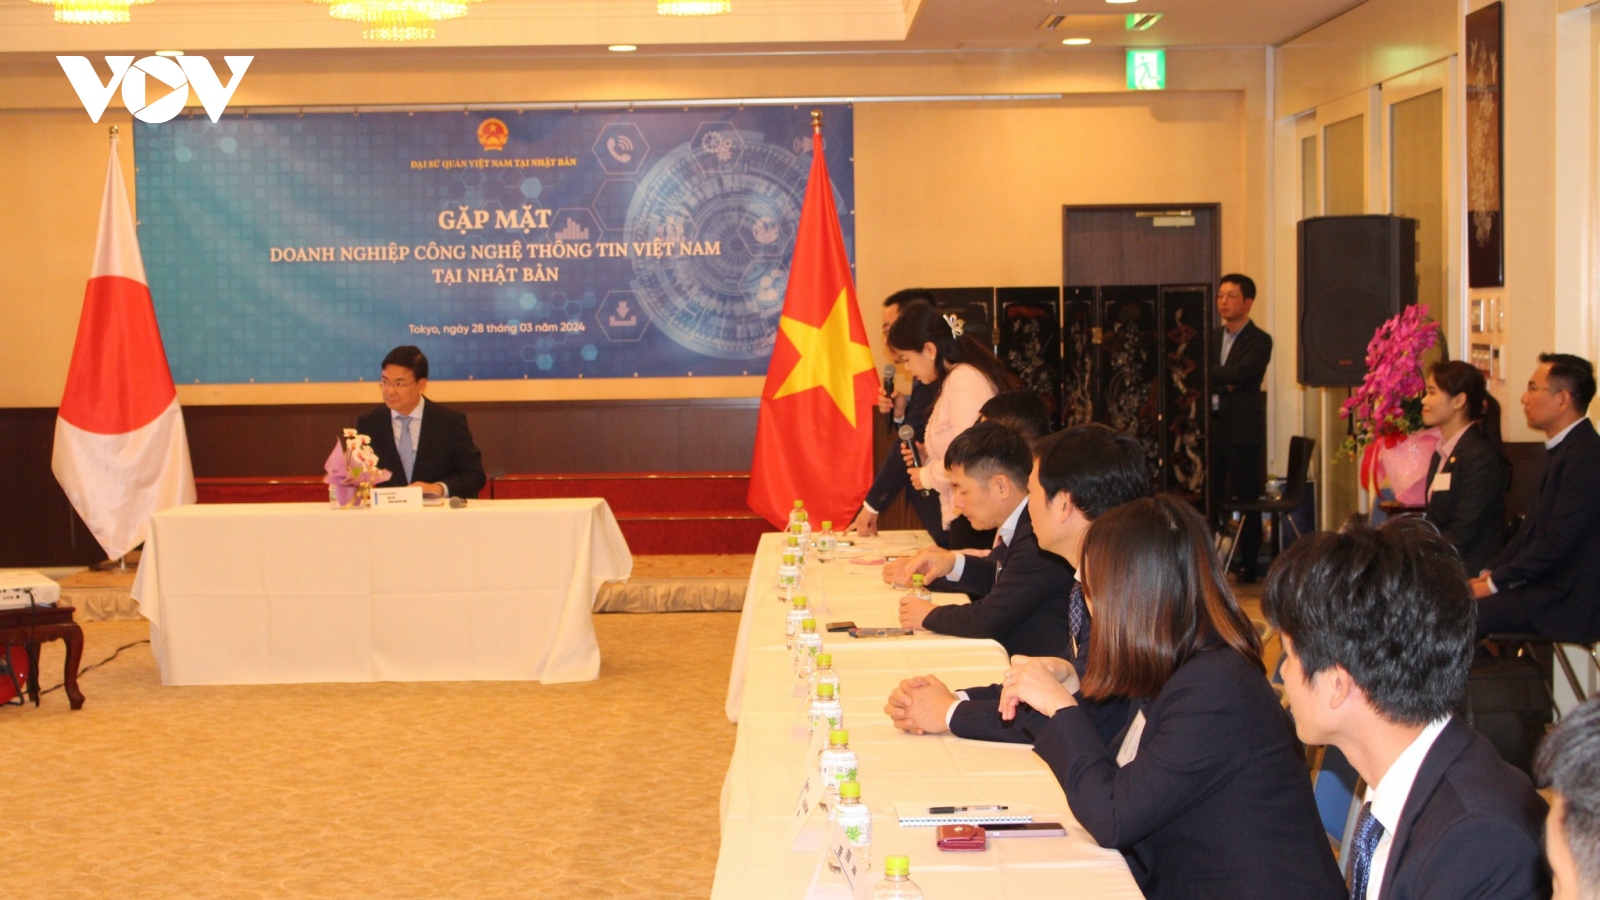 Đại sứ quán Việt Nam tại Nhật Bản gặp mặt doanh nghiệp công nghệ thông tin